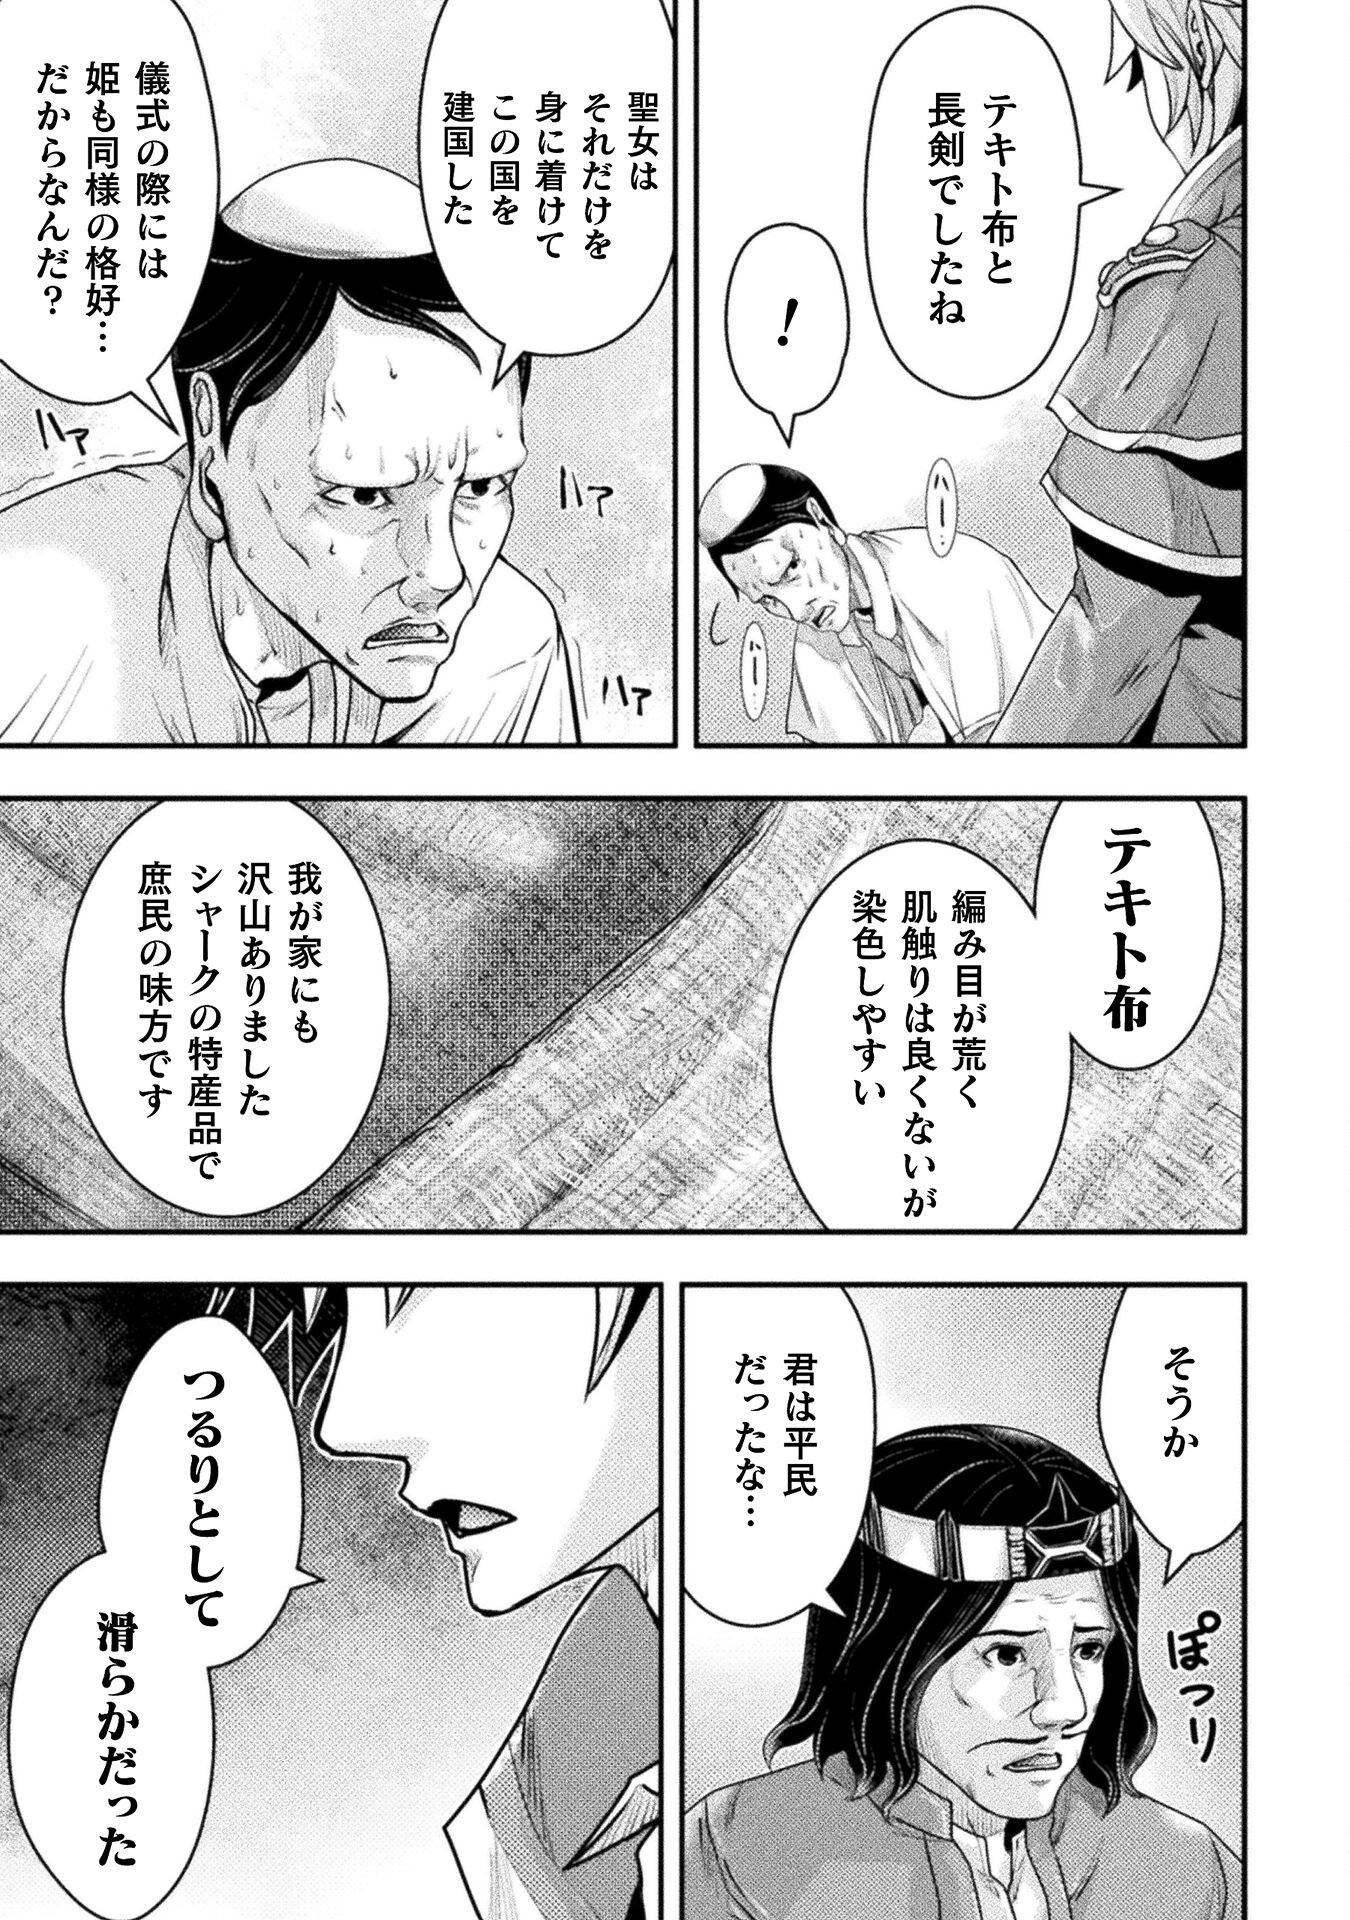 異世界の名探偵; Detectives from another world 第13話 - Page 9